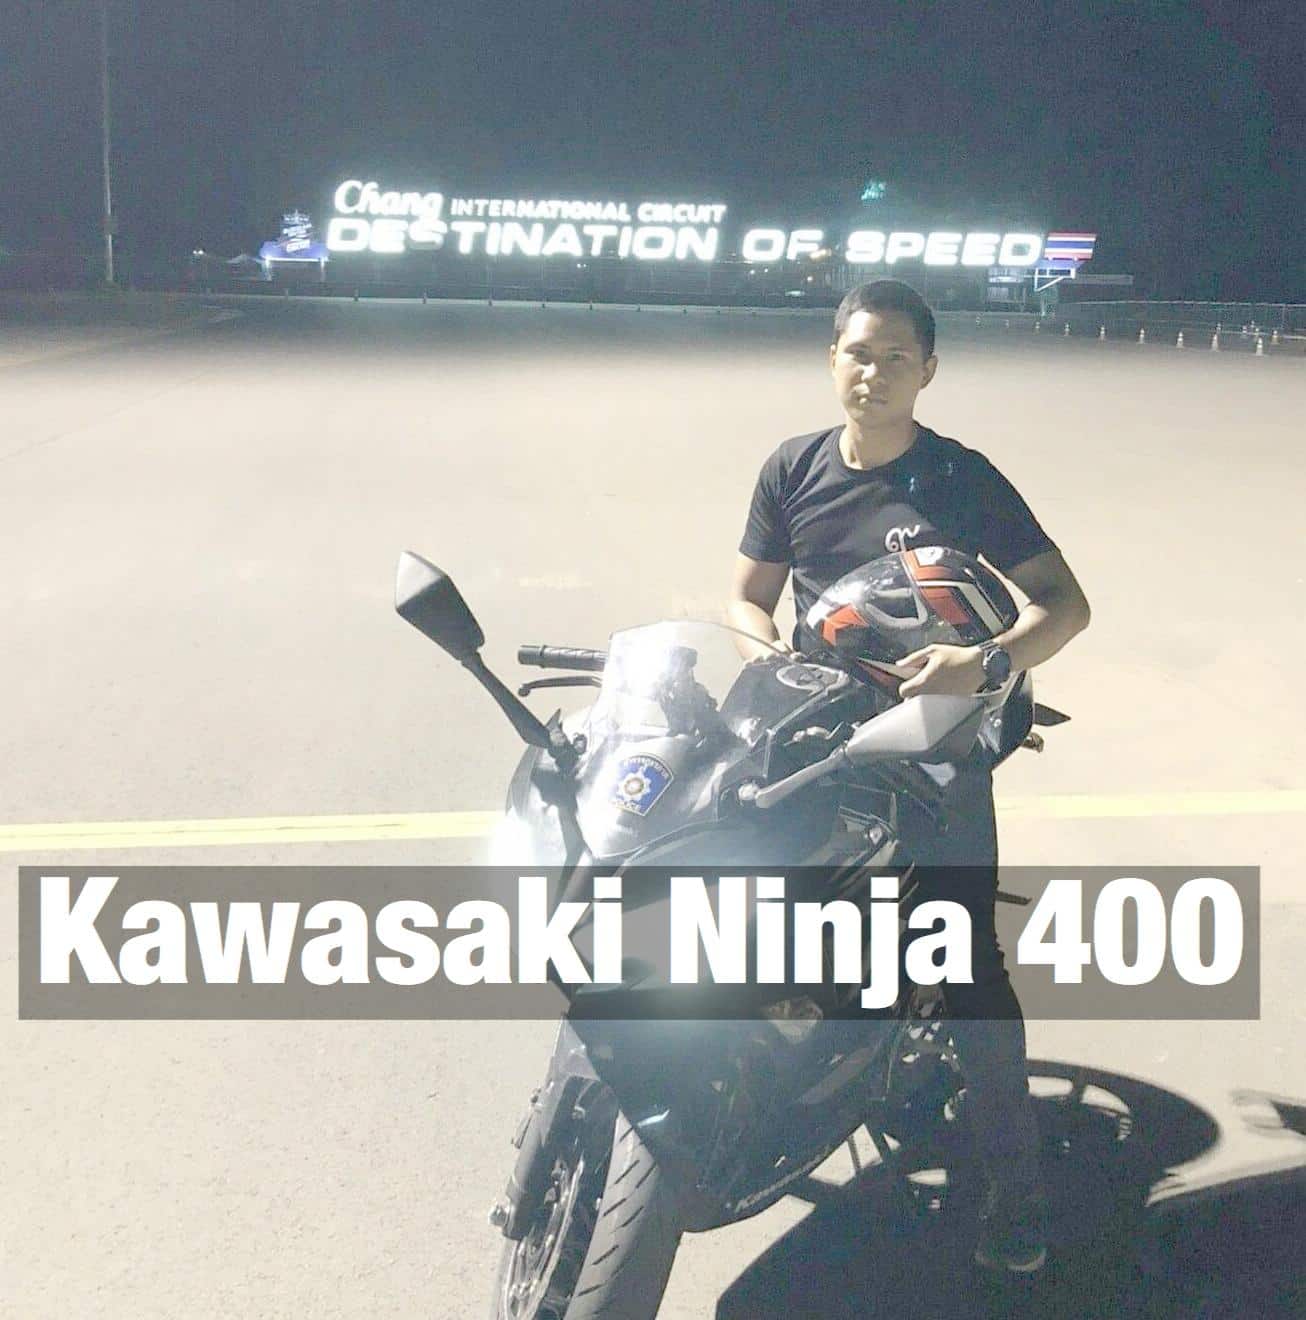 (รีวิว) ครั้งหนึ่งผมเคยขับ kawasaki ninja 400